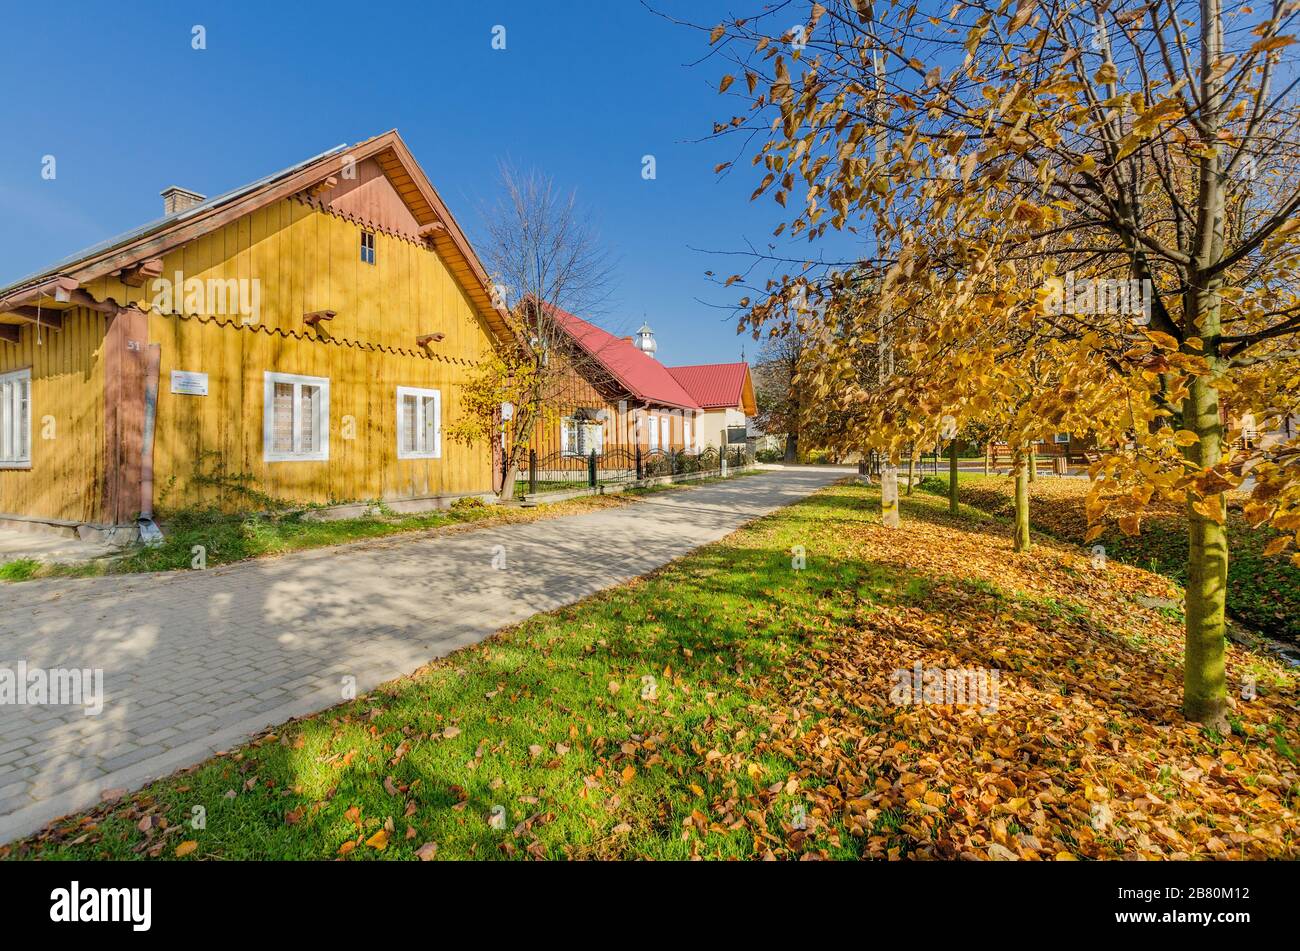 Ein kleines Dorf mit traditioneller Architektur in der Gegend von Limanowa. Strzeszyce, Provinz Kleinpolen, Polen. Stockfoto